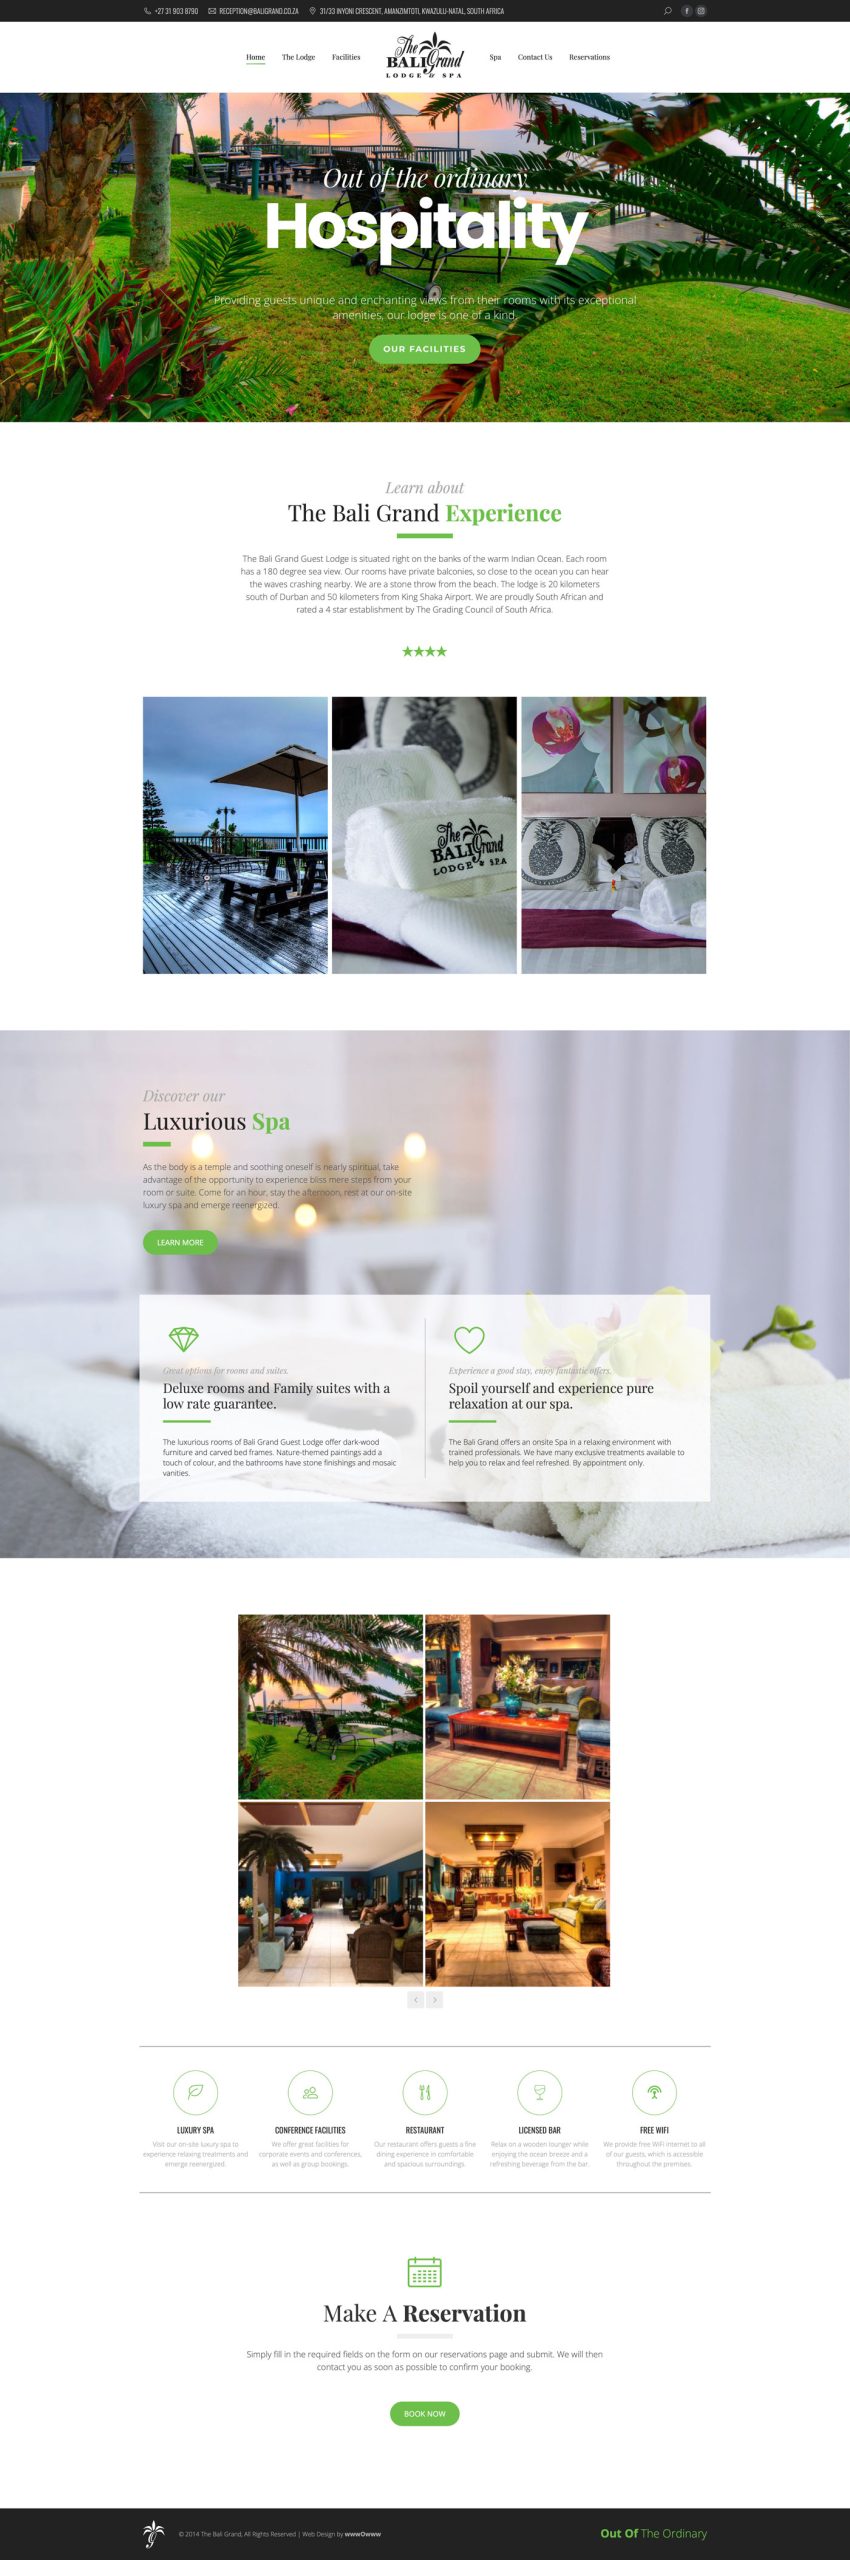 Web Design for Hotels